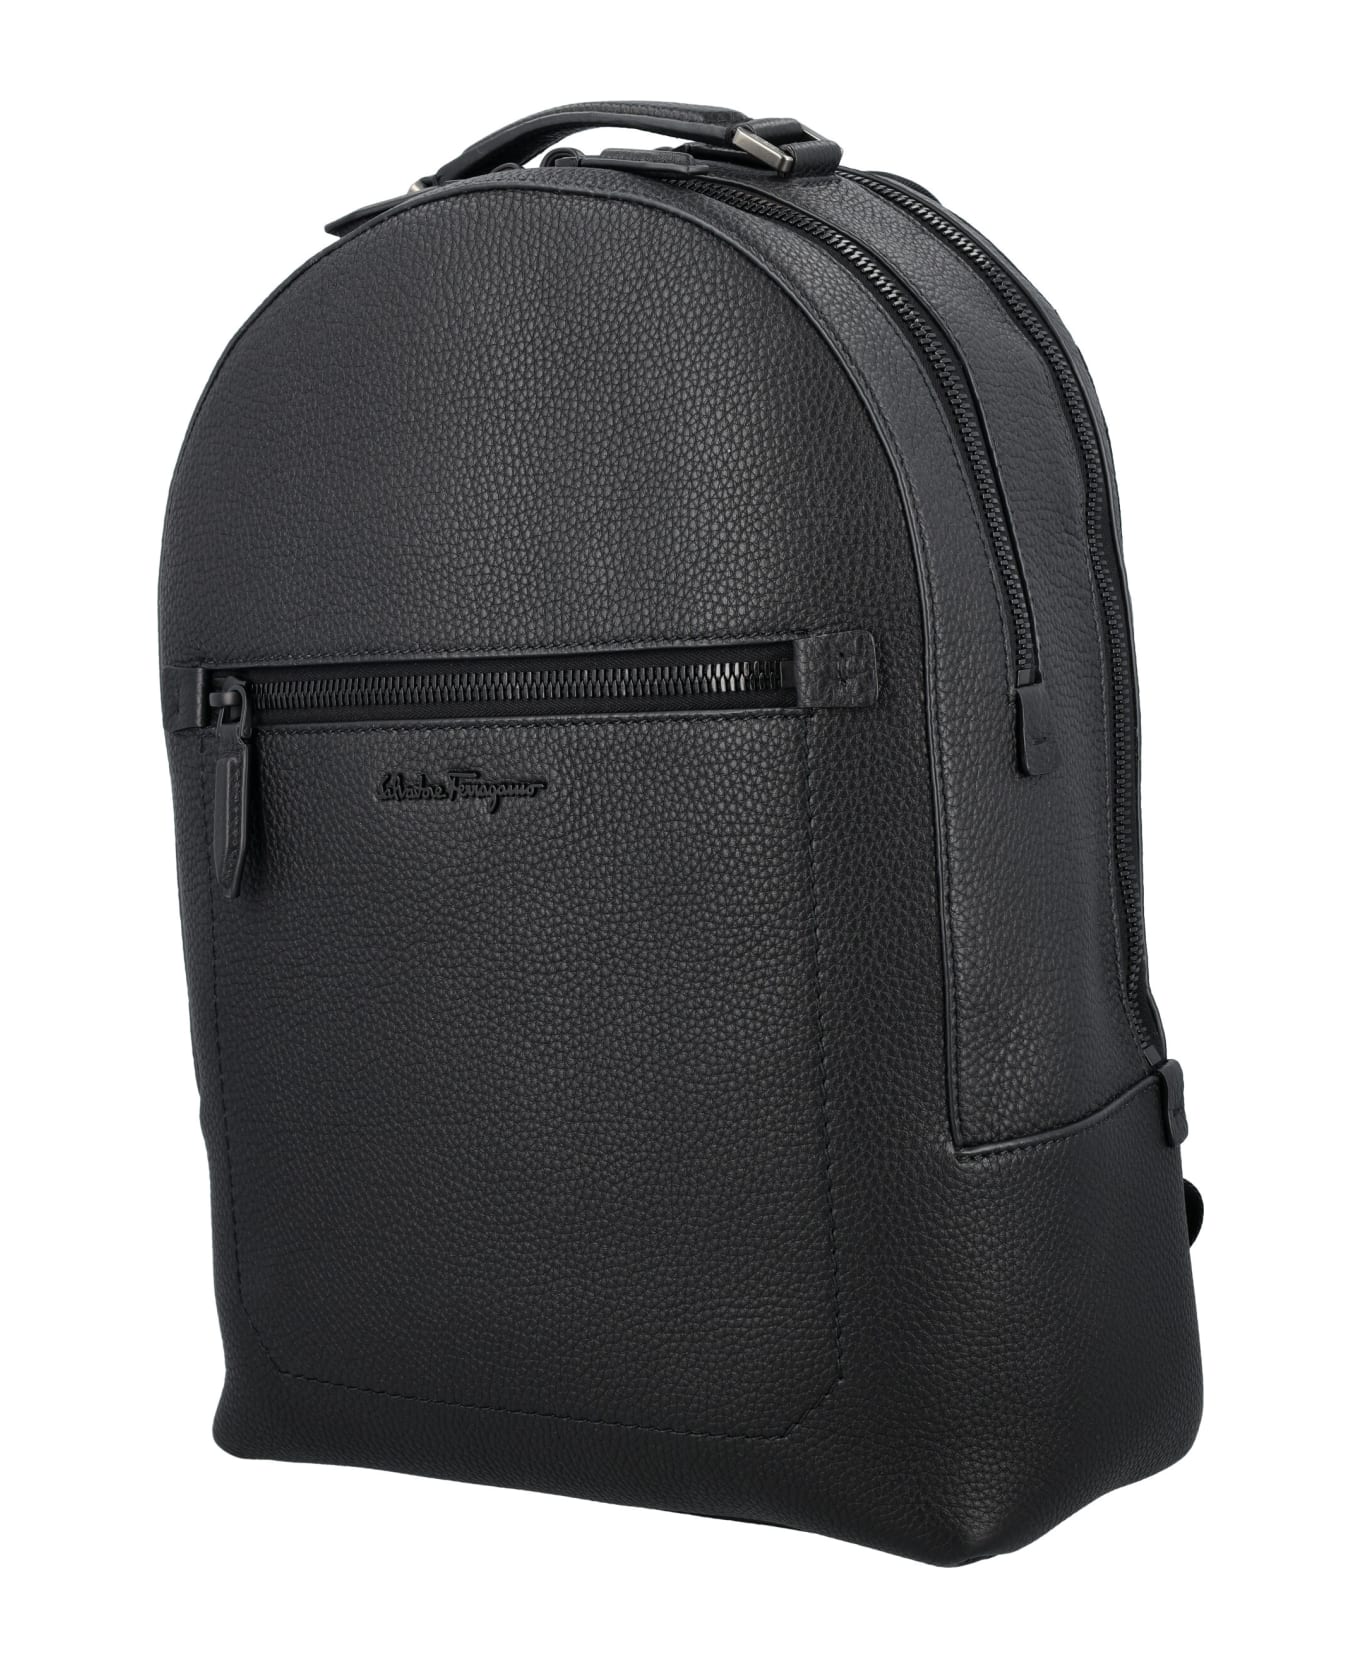 Ferragamo Leather Backpack - NERO || NERO F/25 || NERO